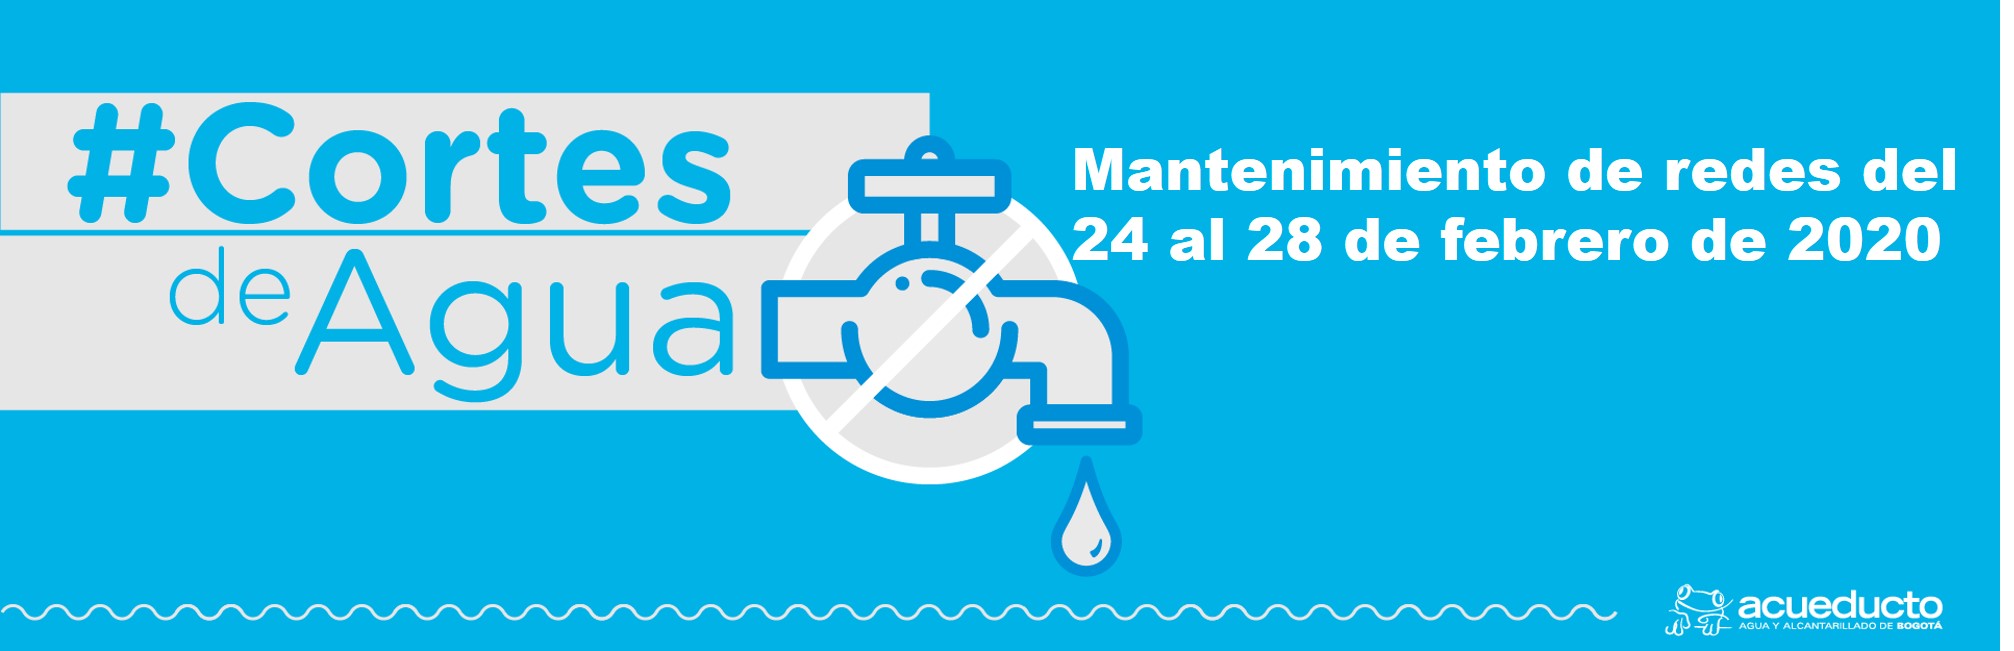 Programación cortes de agua por mantenimiento de redes del 24 al 28 de febrero de 2020